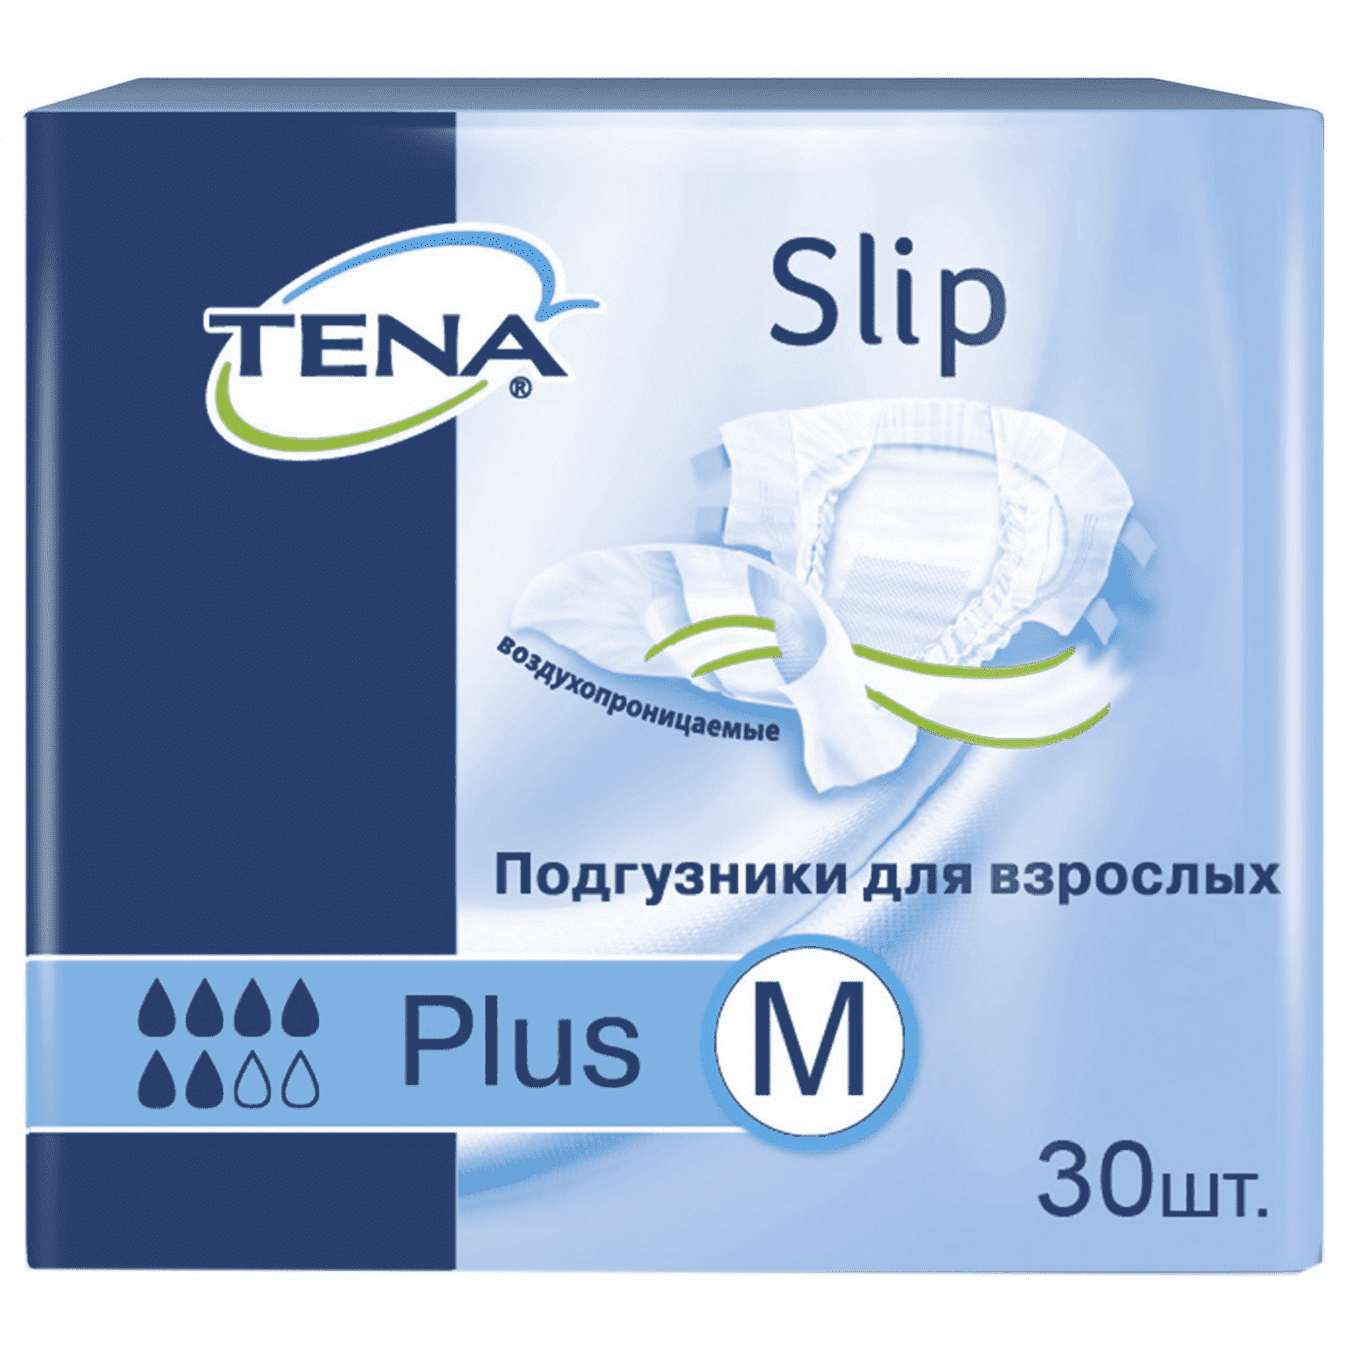 Подгузники для взрослых Tena Slip Plus М дышащие до 120 см 30 шт